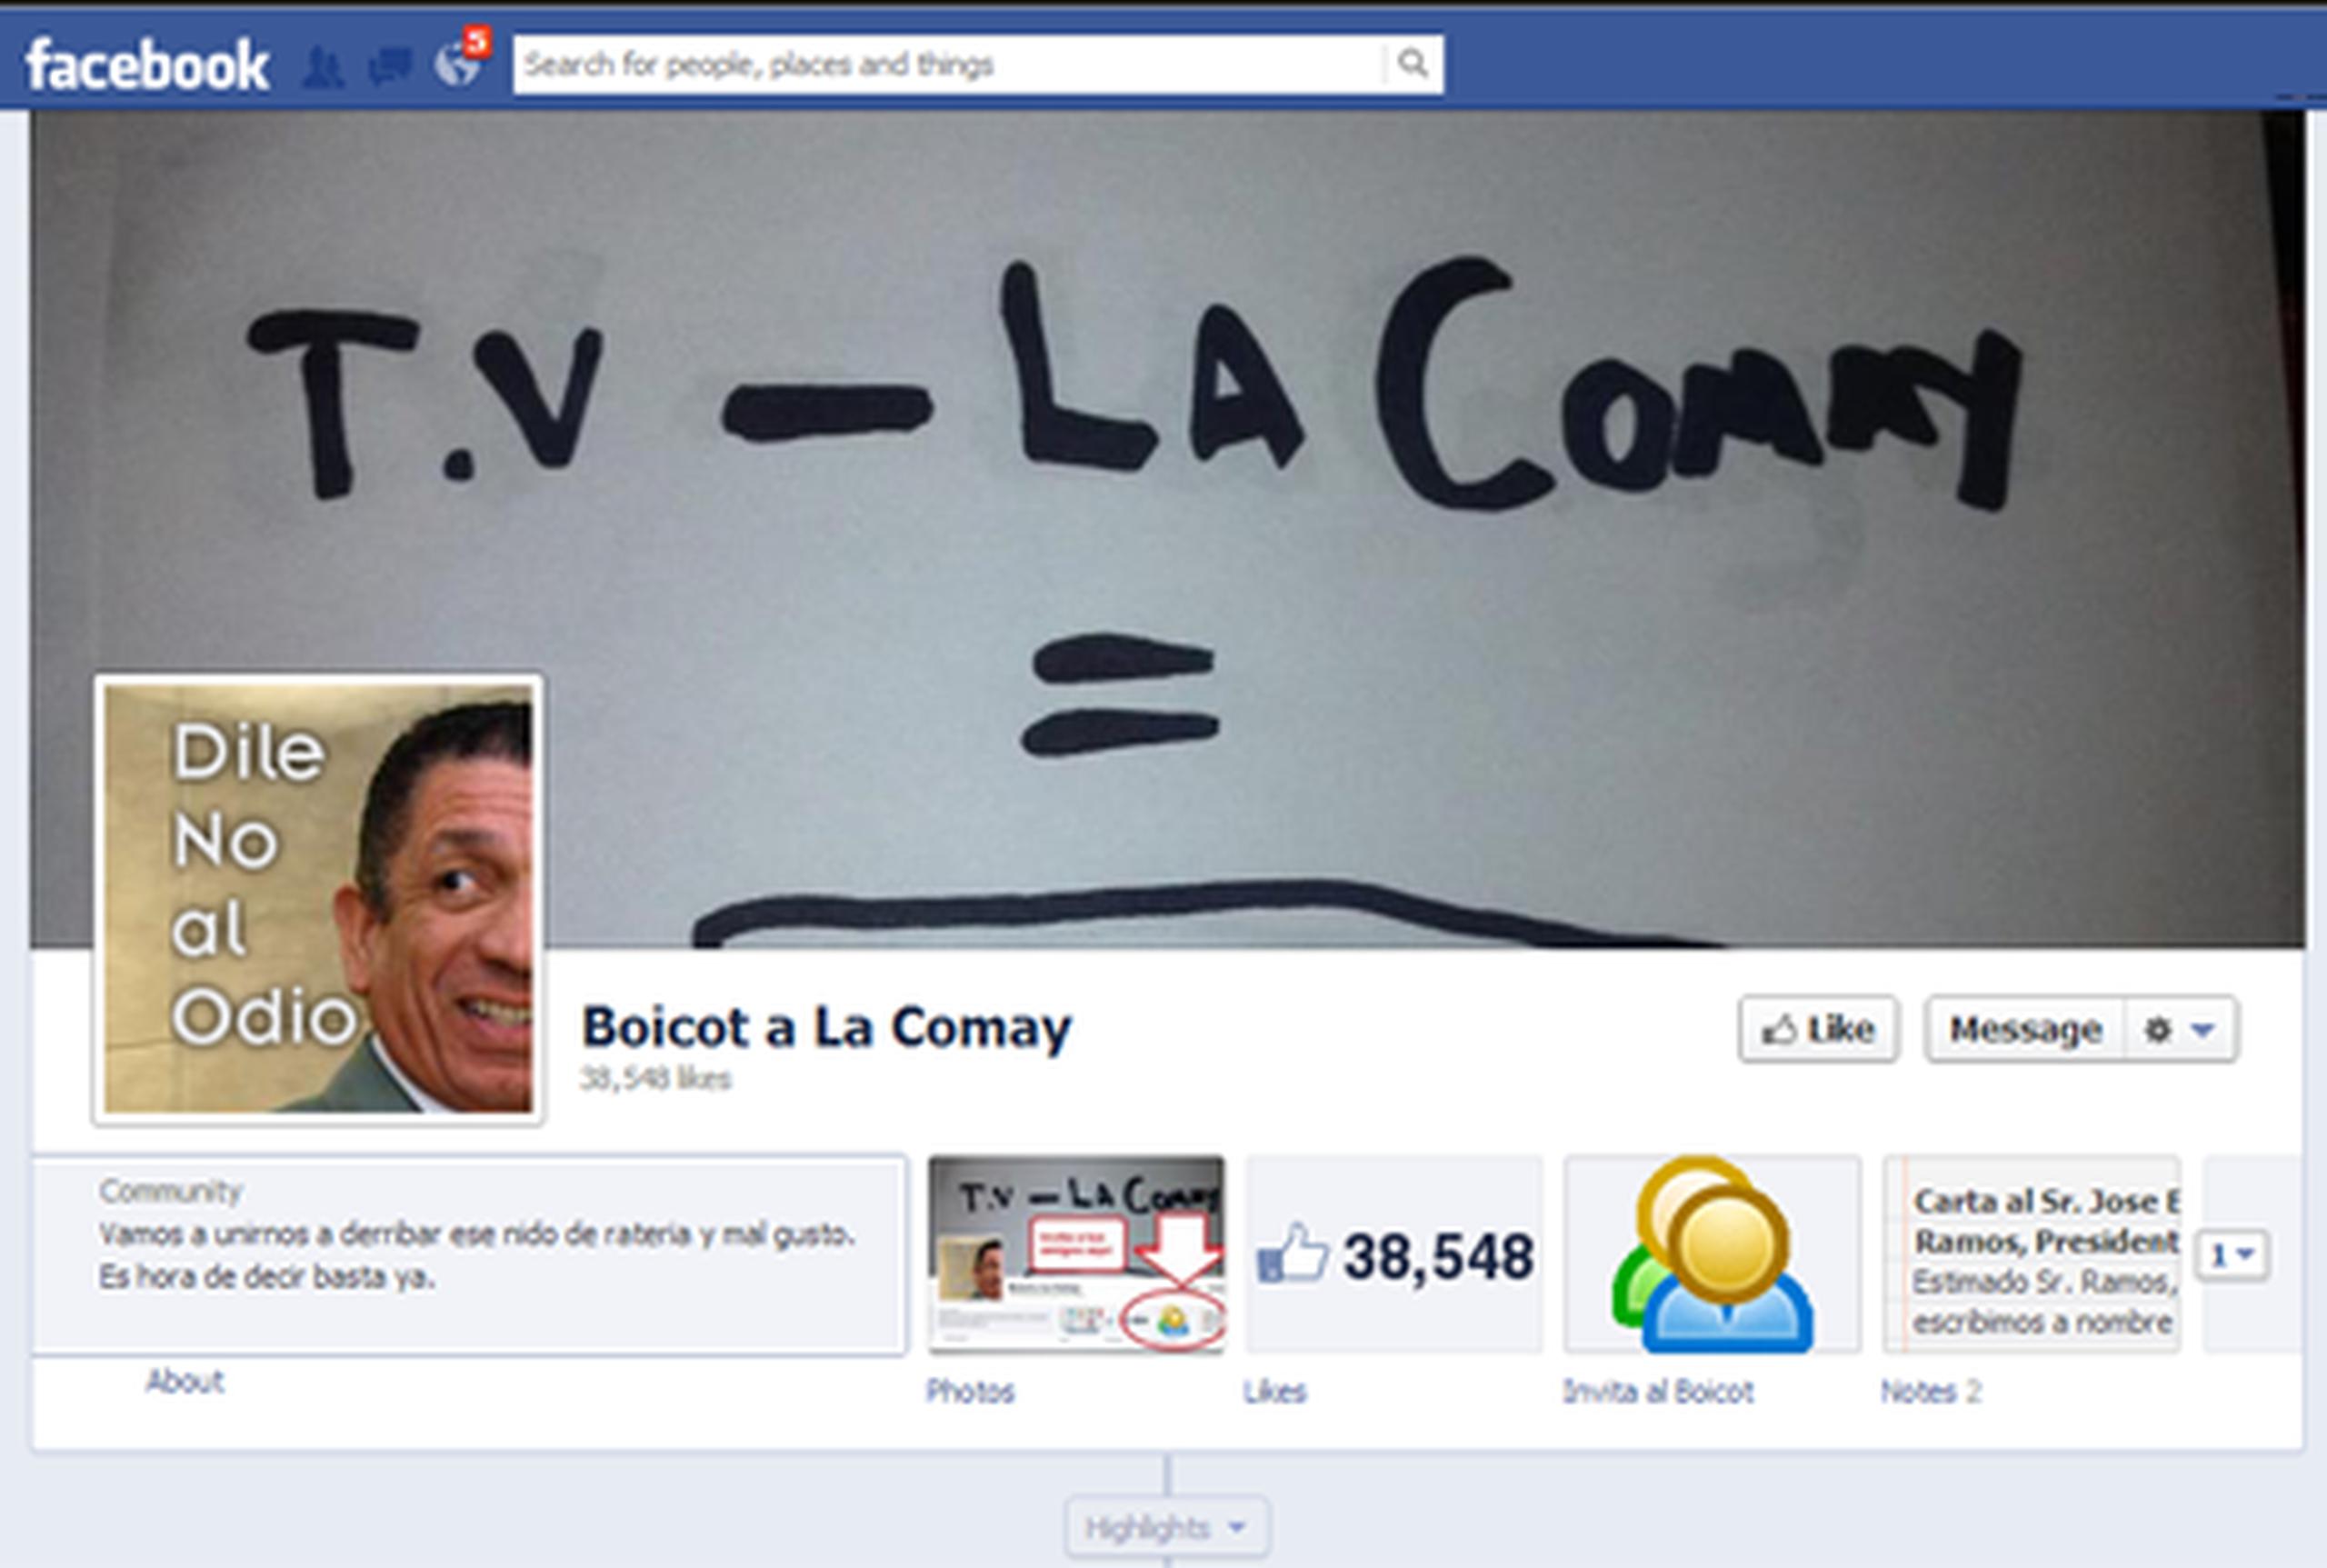 La página de Facebook de la iniciativa "Boicot a La Comay" ha recibido más de 40,000 "likes" en las pasadas 40 horas.